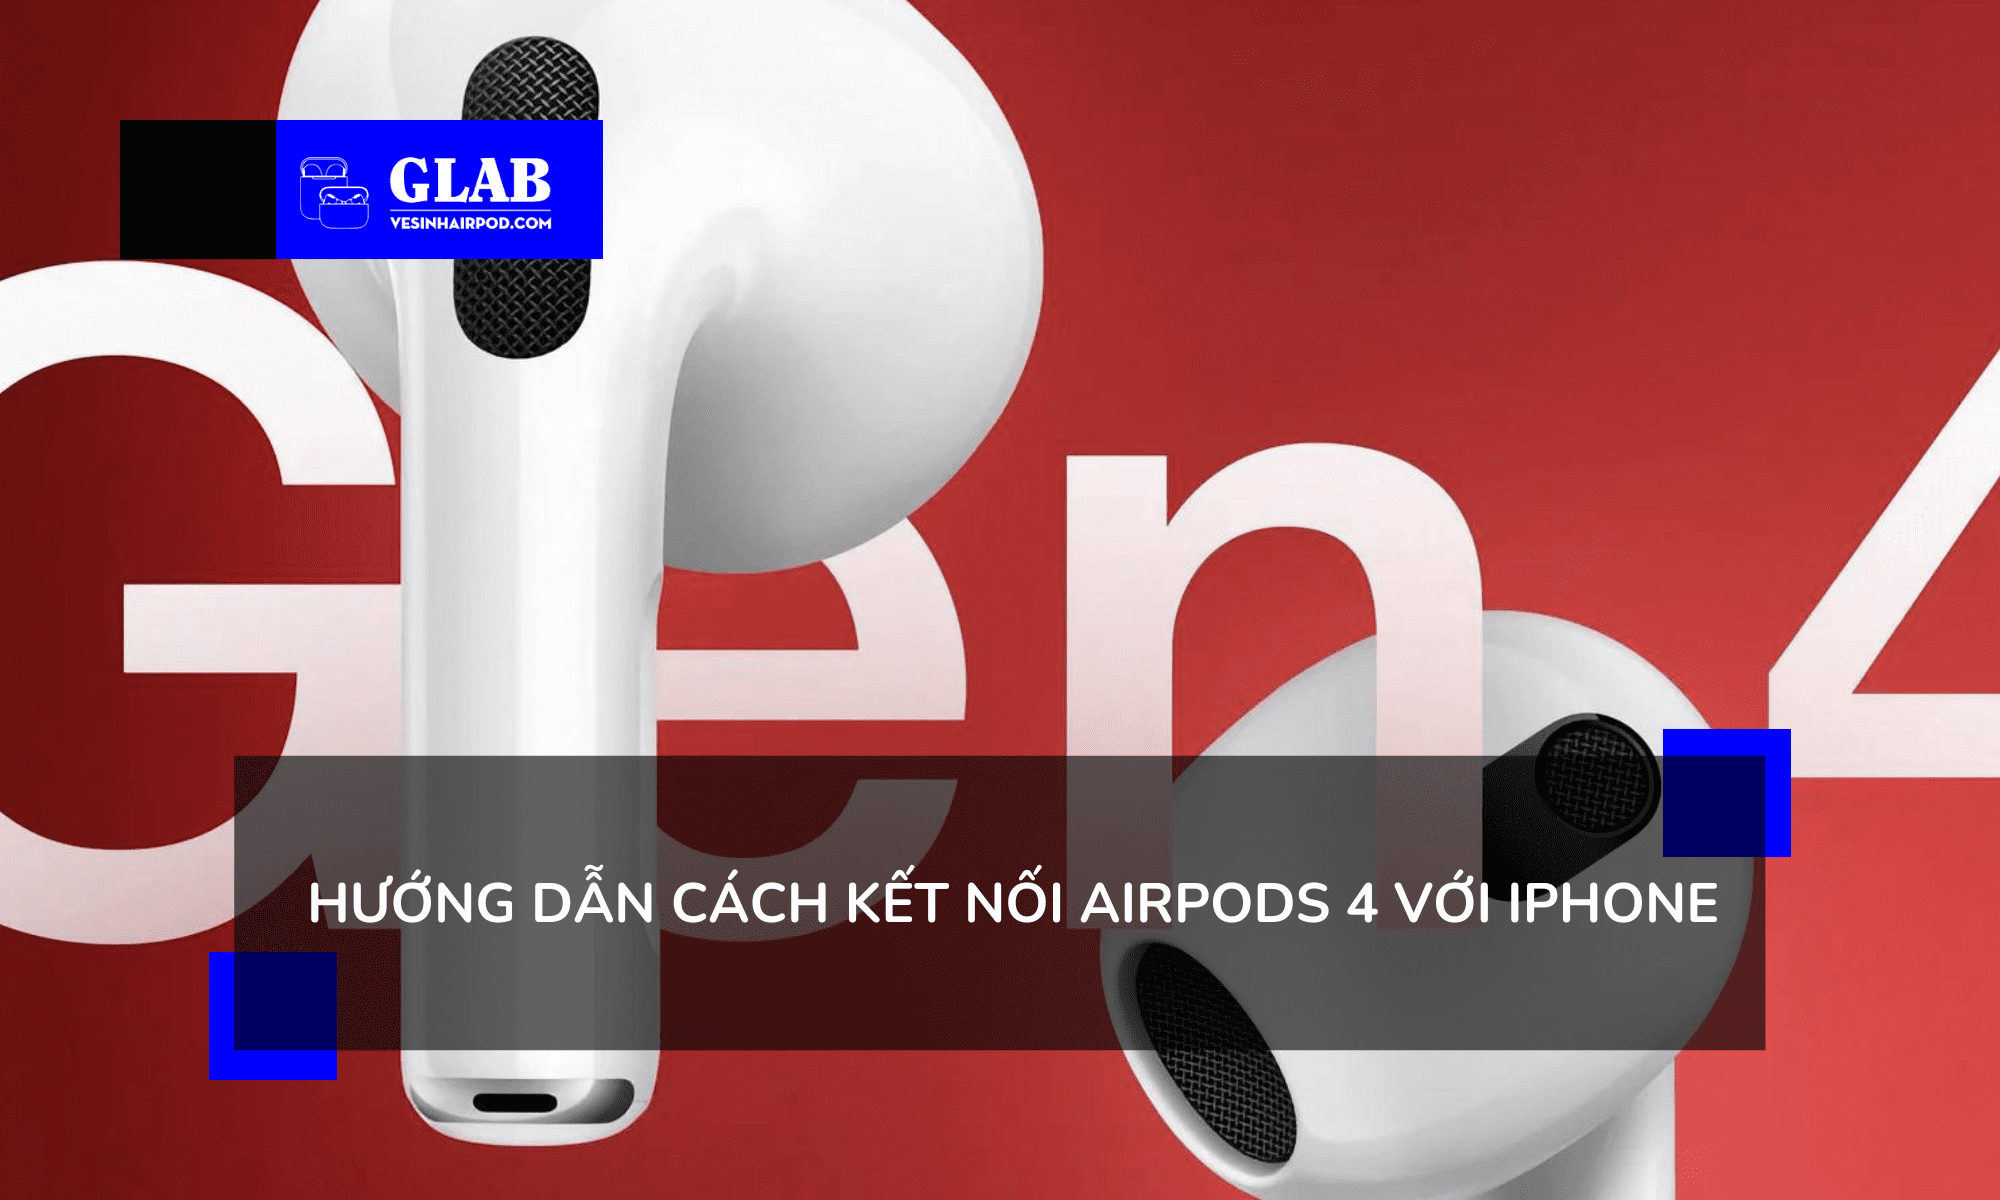 cach-ket-noi-airpods-4-voi-iphone